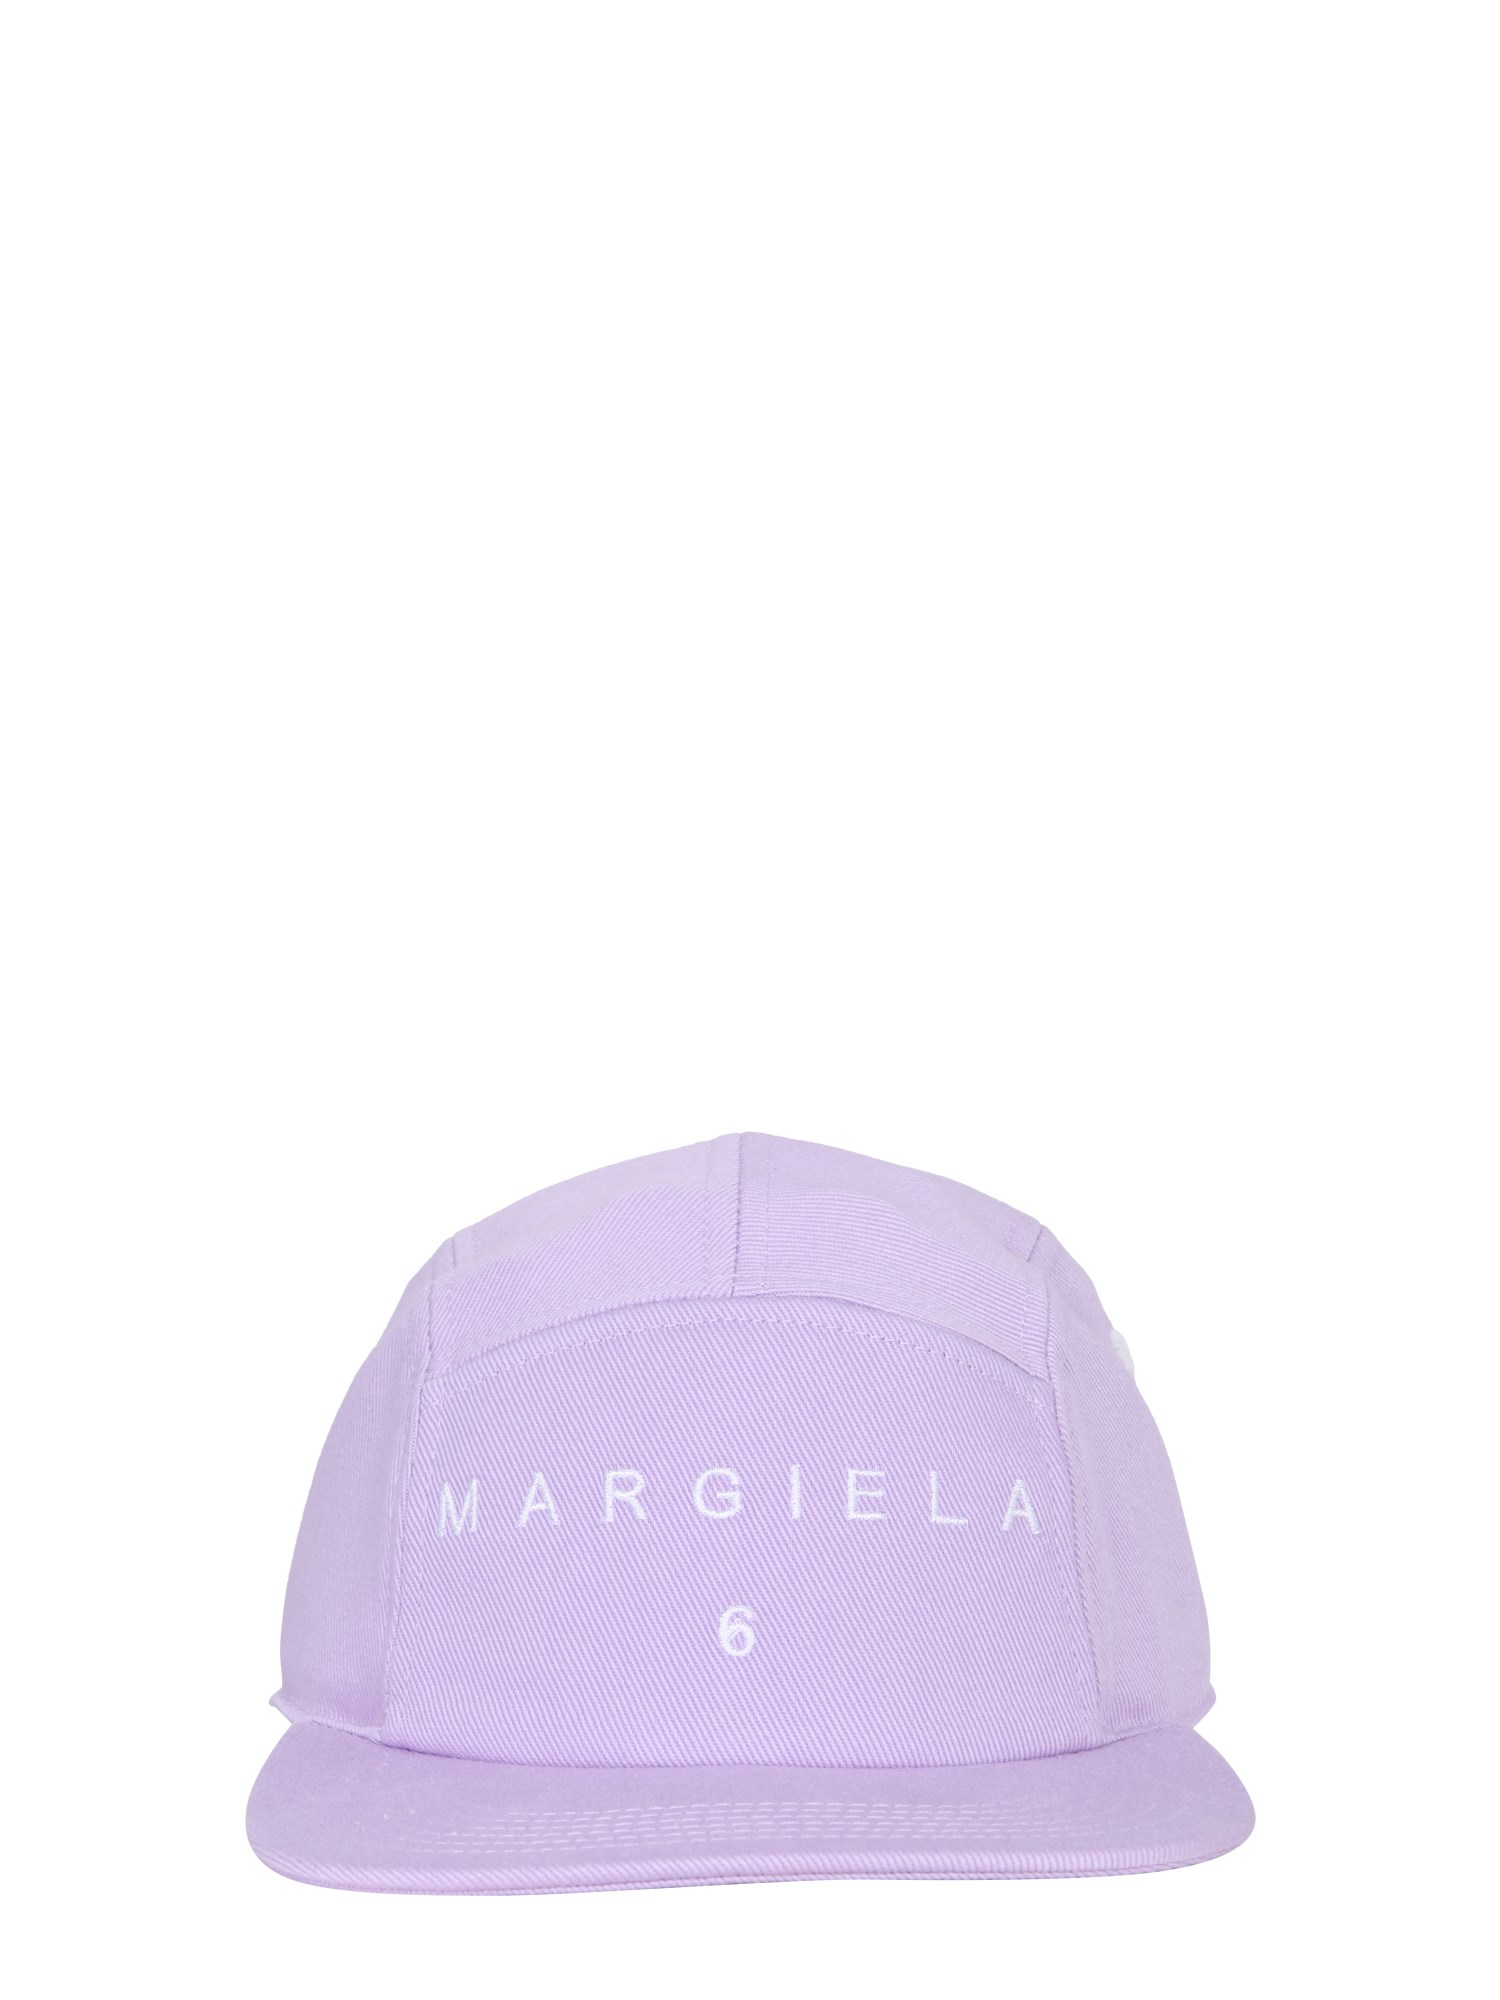 mm6 maison margiela baseball hat with logo